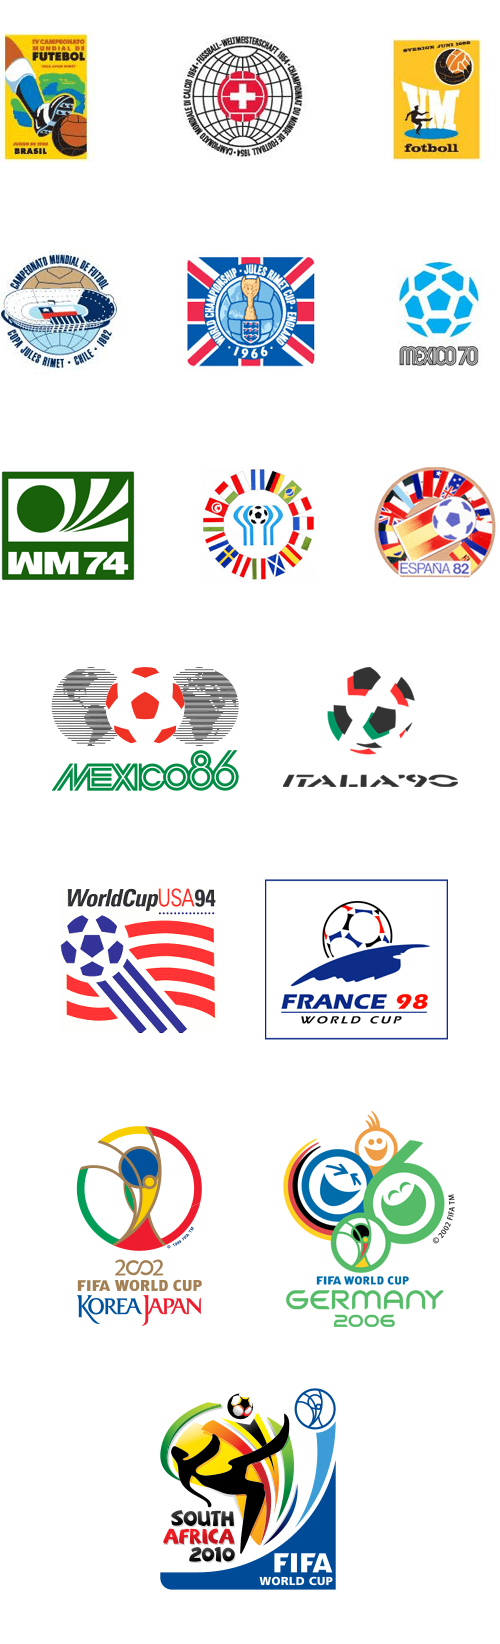 http://logobr.files.wordpress.com/2010/05/logos_copa_do_mundo_futebol.jpg